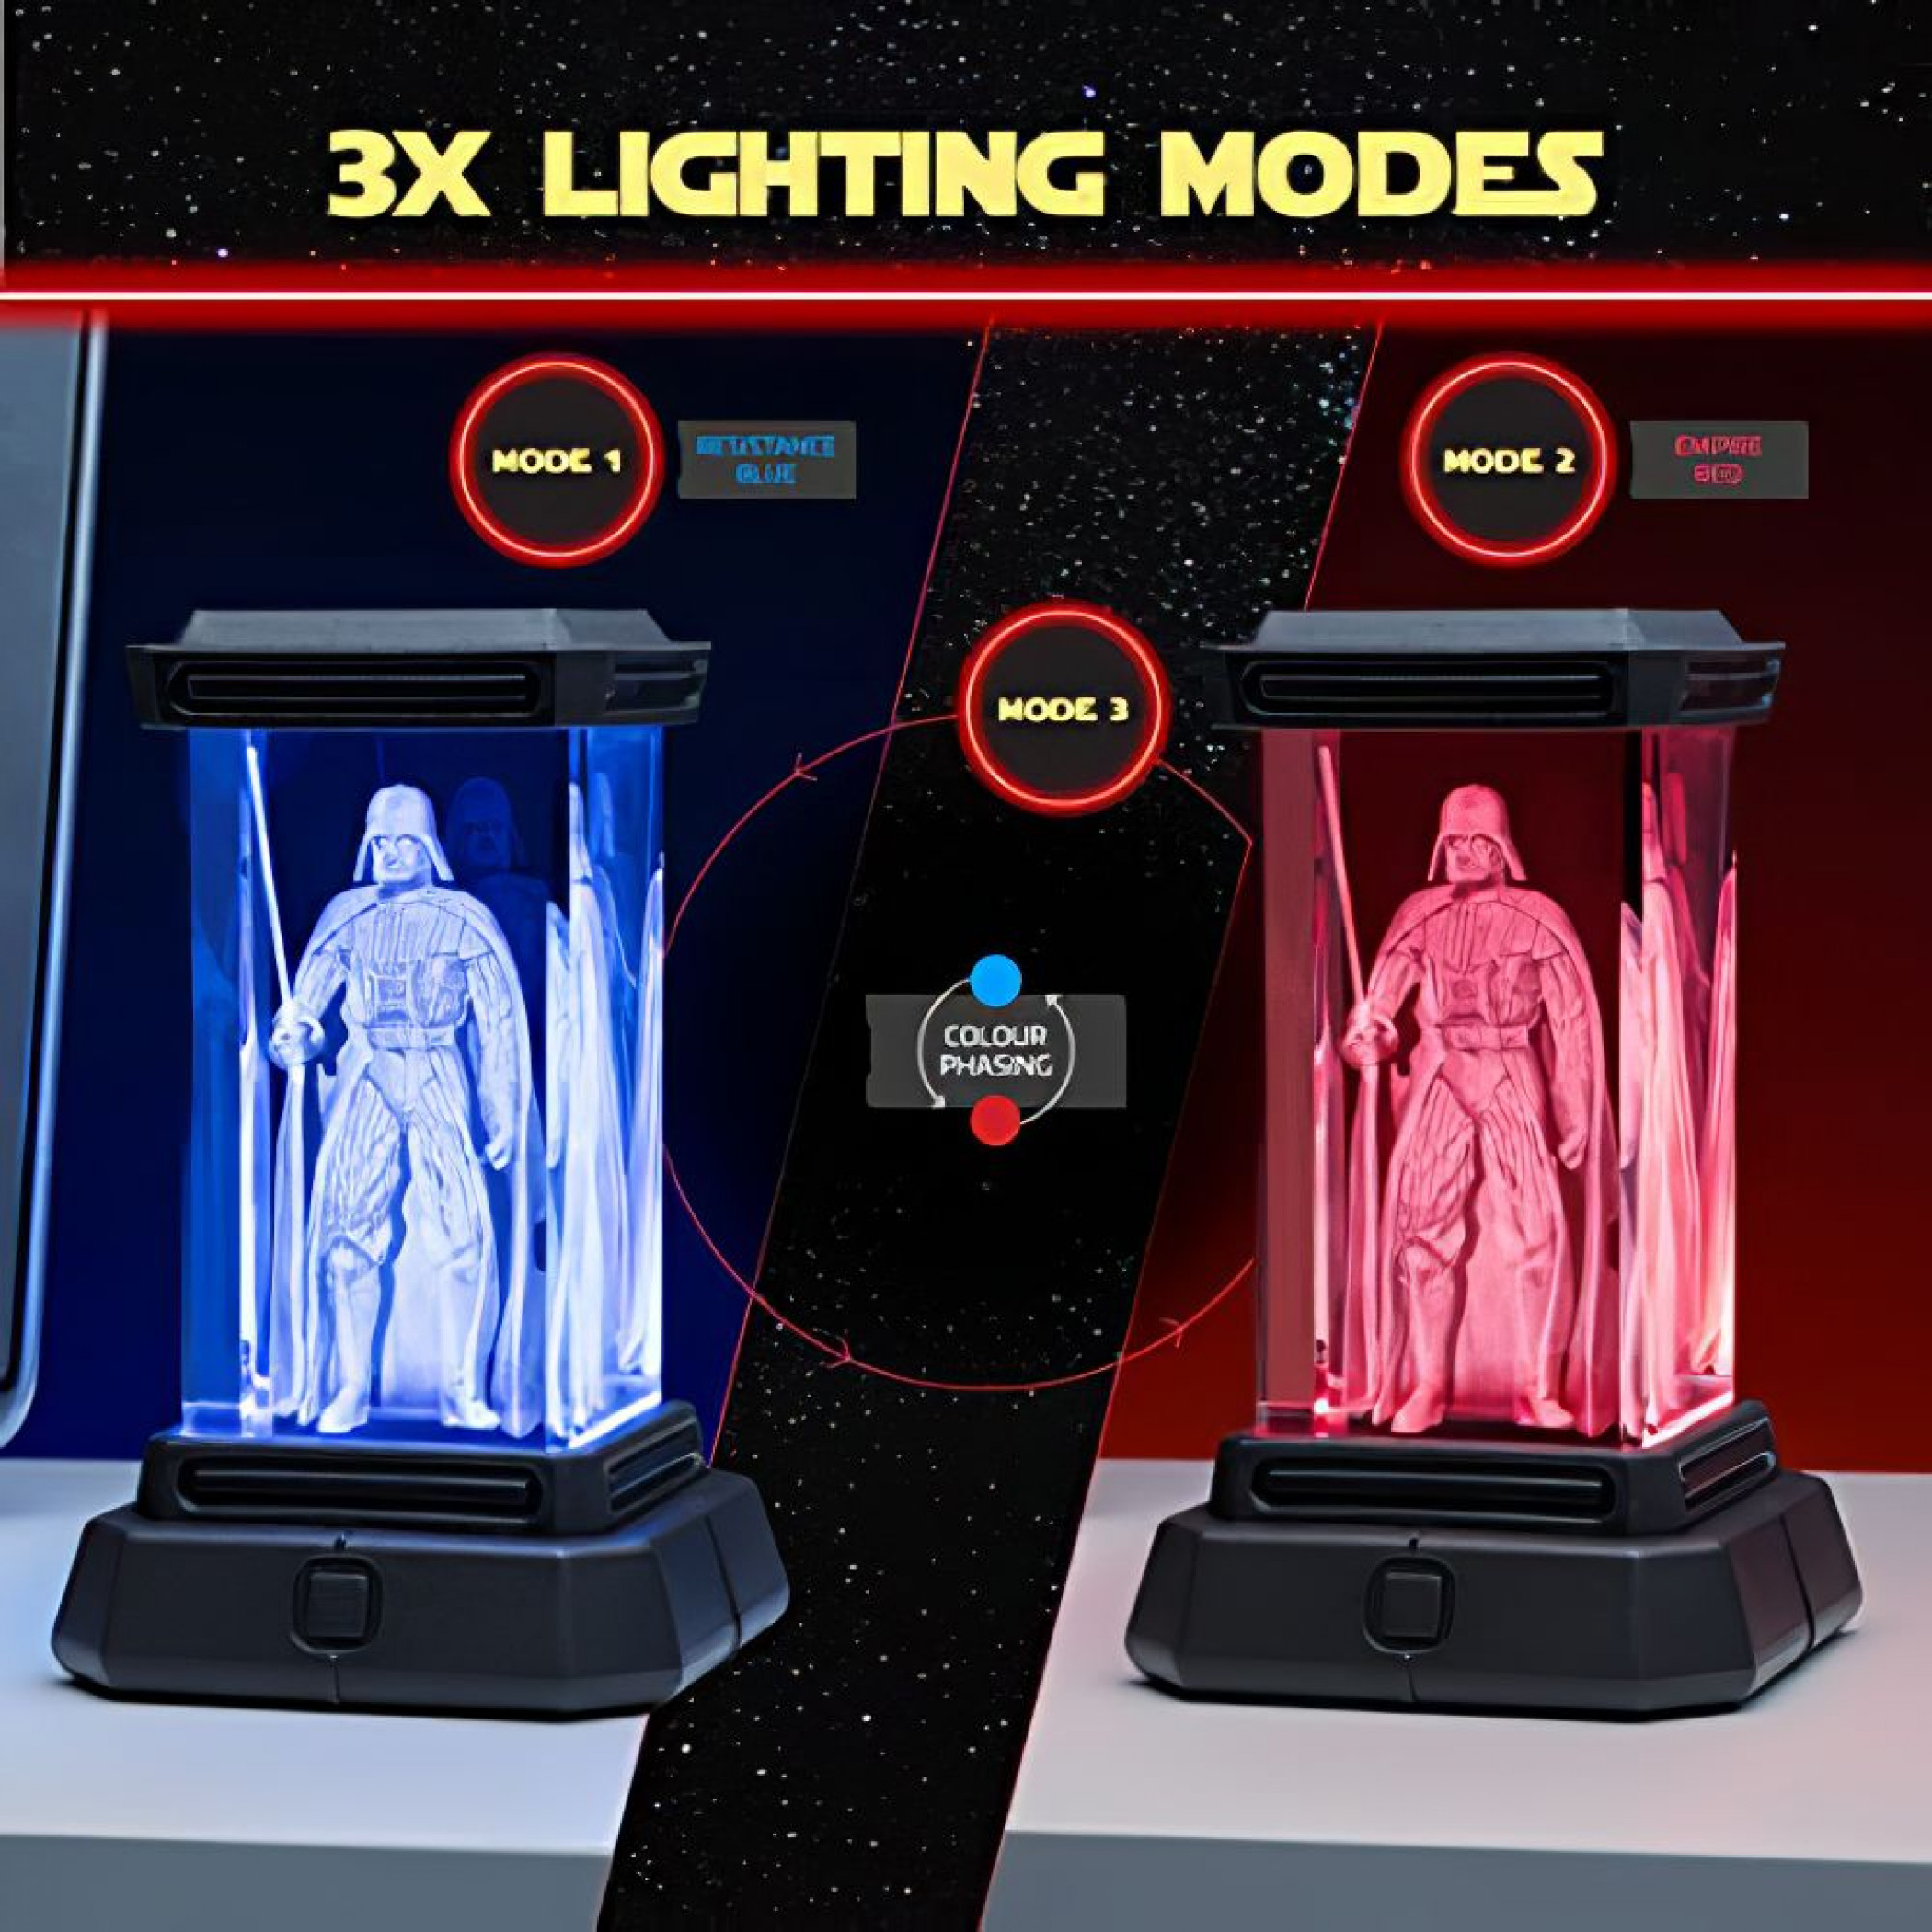 Star Wars Darth Vader Holographic Light